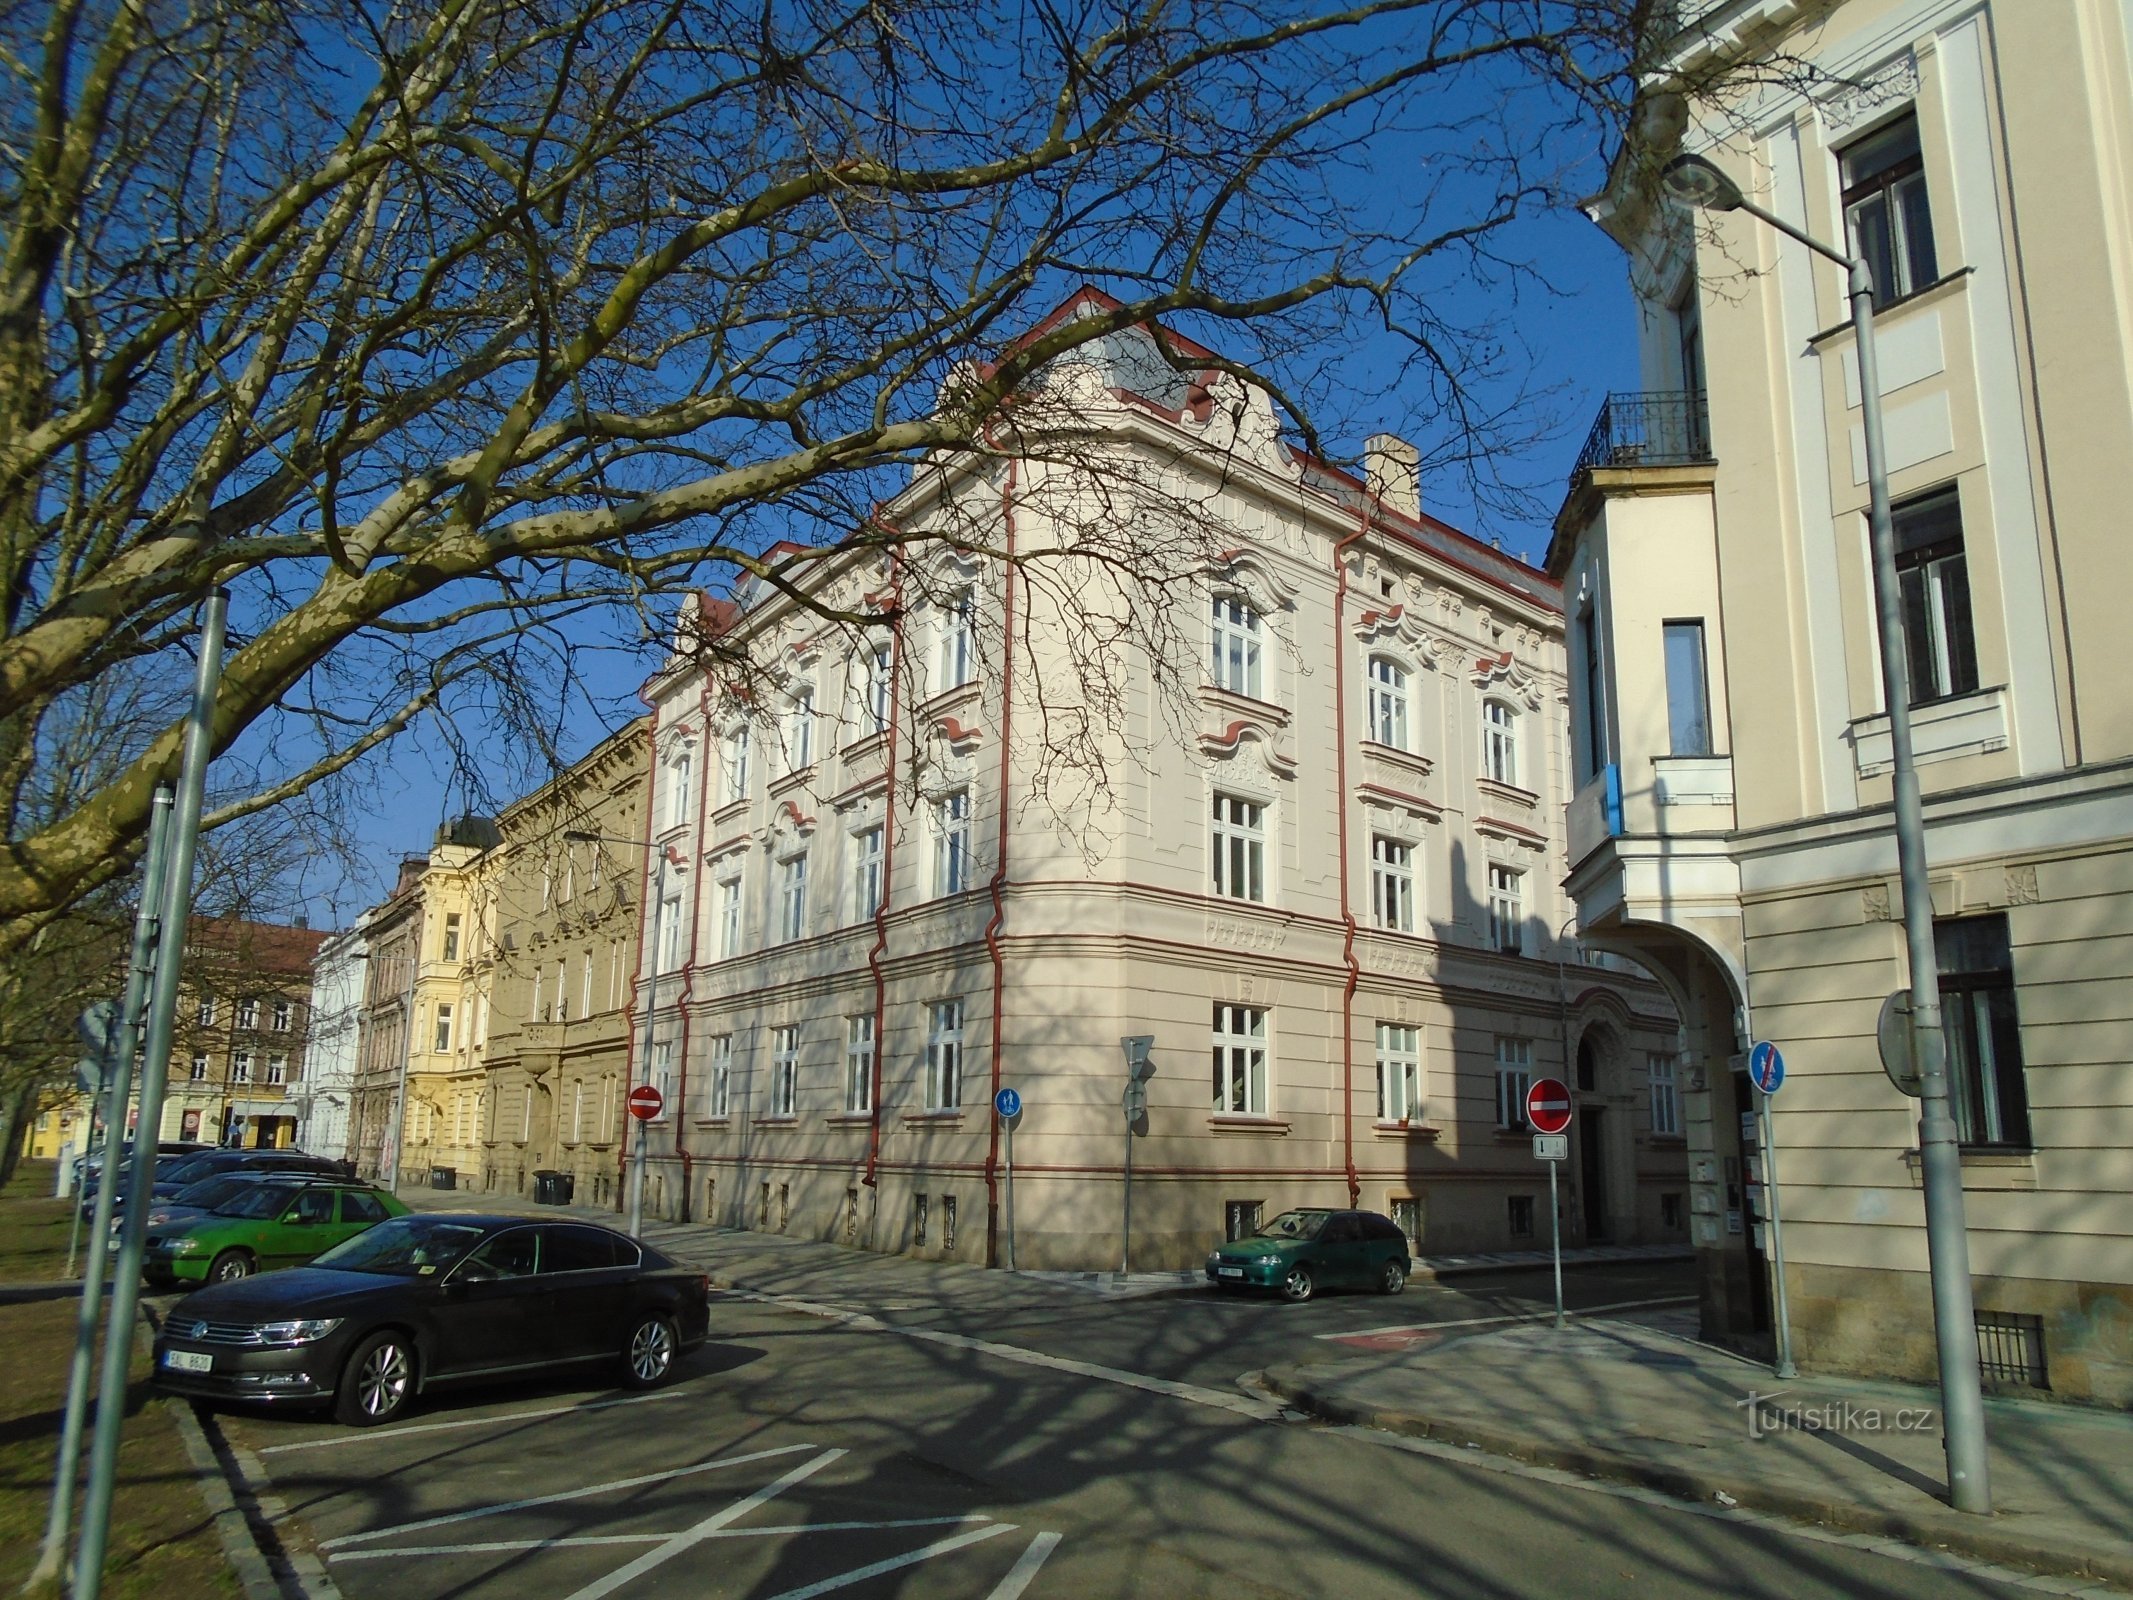 Angolo tra Eliščina nábřeží e Chmelovy Street (Hradec Králové, 1.4.2018 aprile XNUMX)